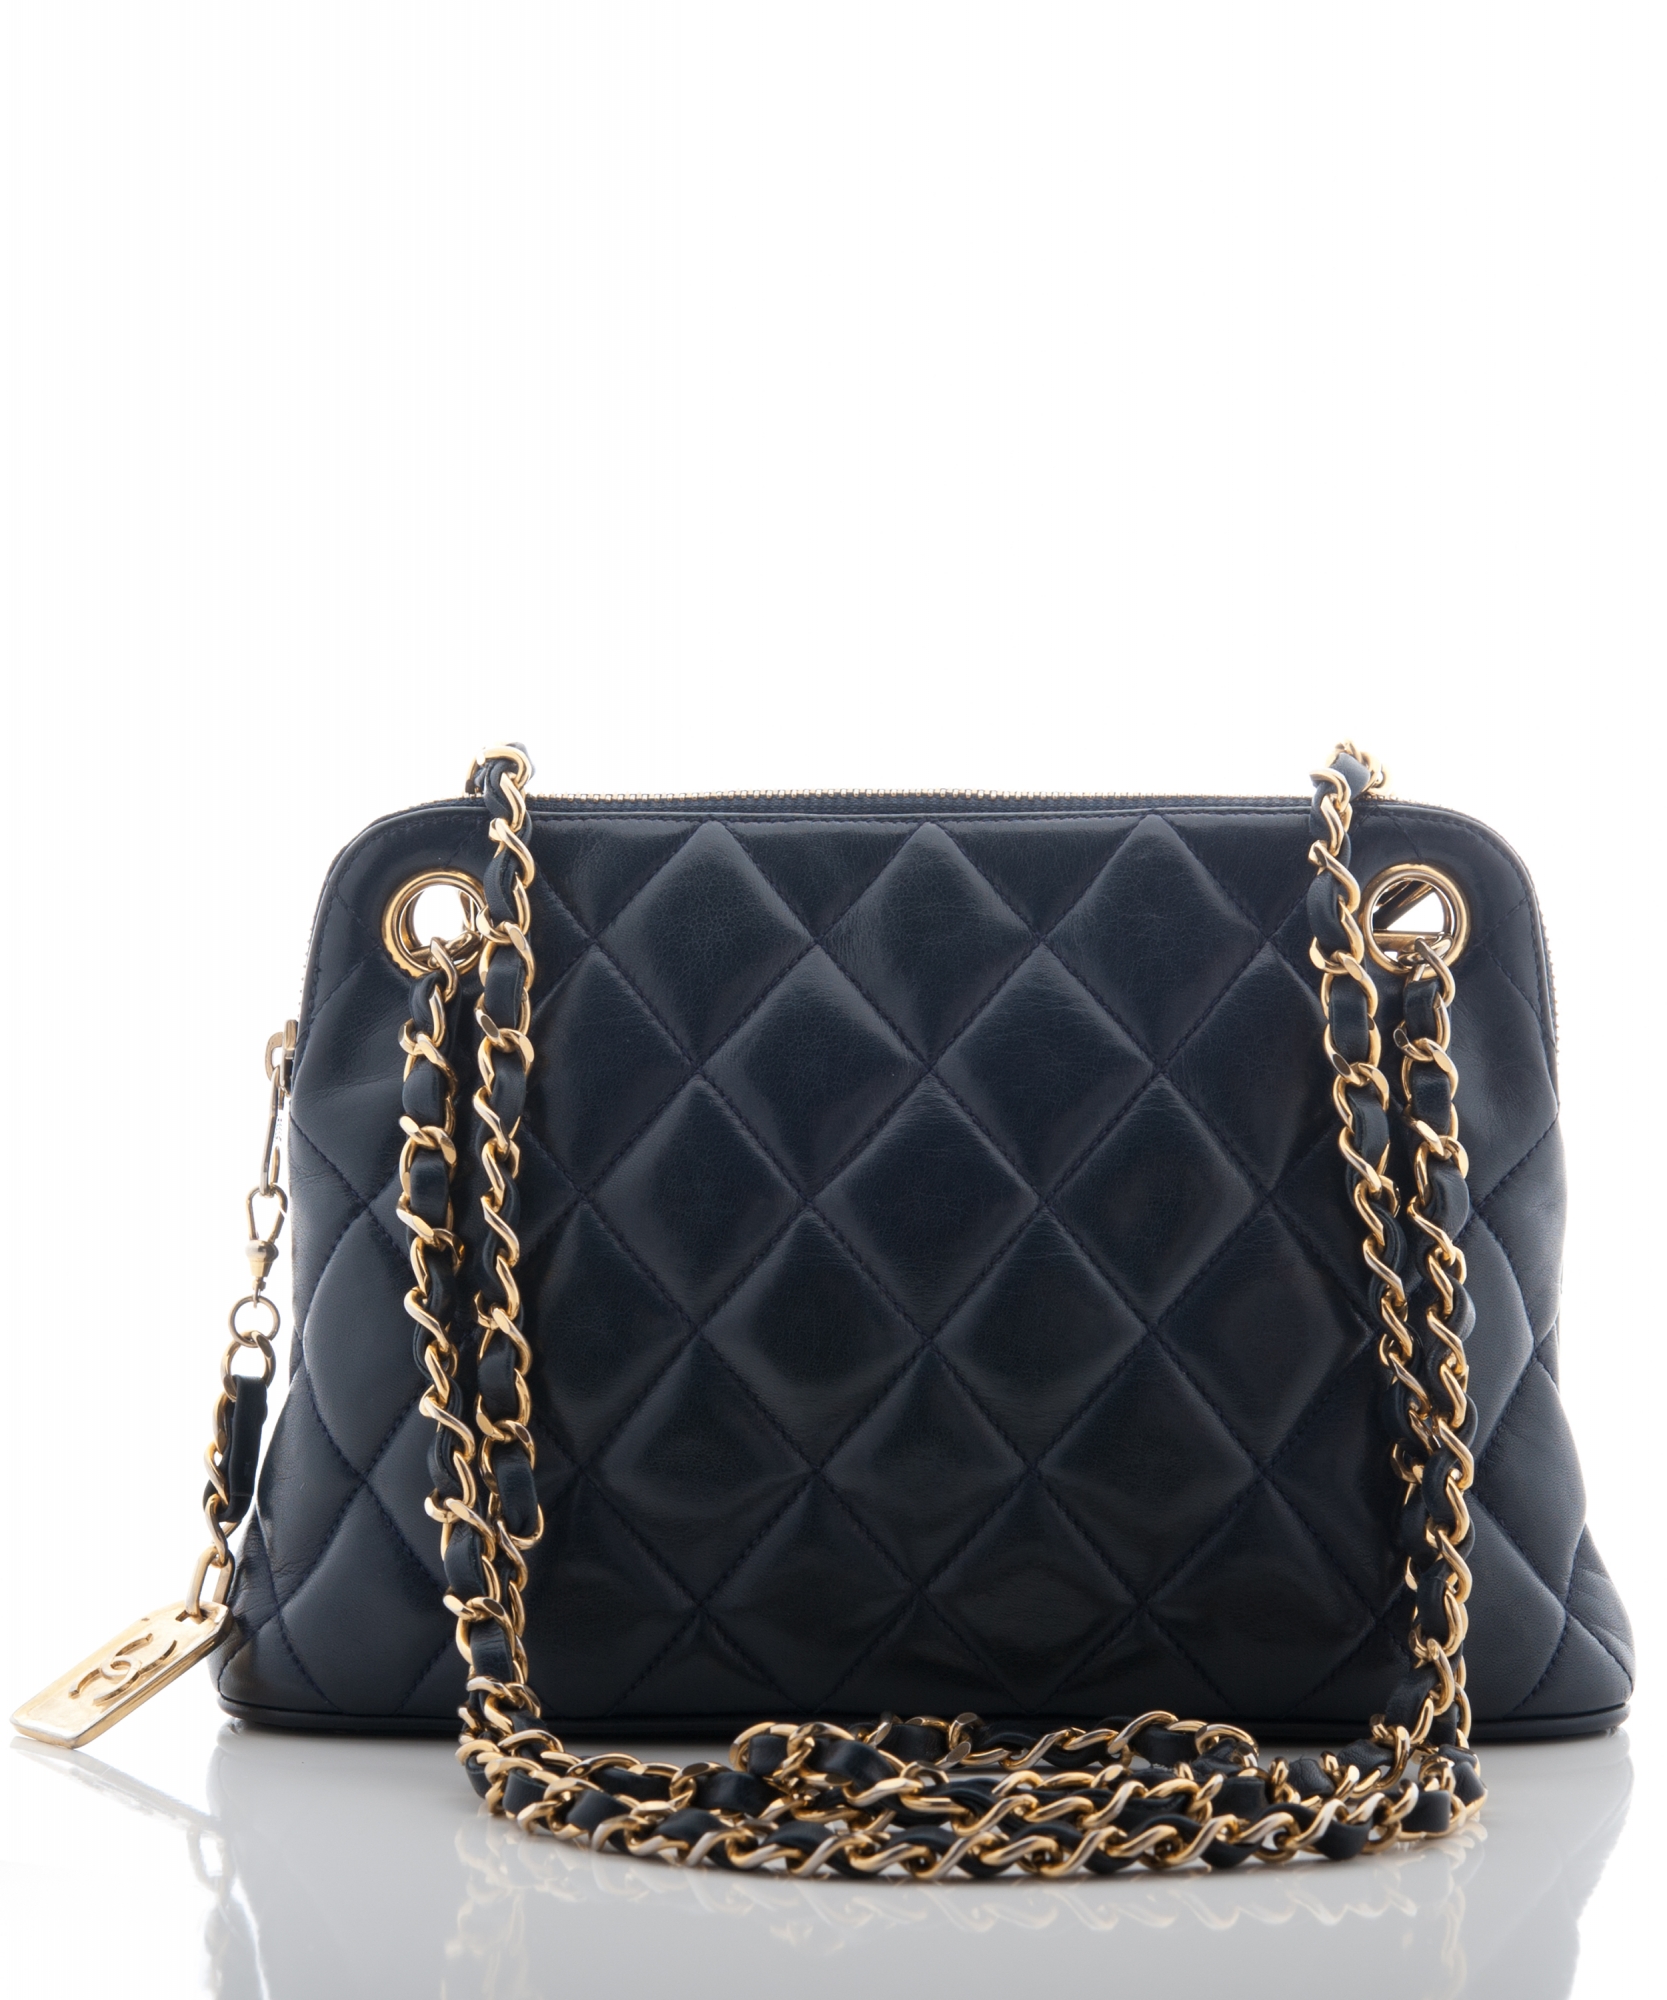 Chanel Dark Blue Quilted Leather Shoulder Bag - Chanel | La Doyenne